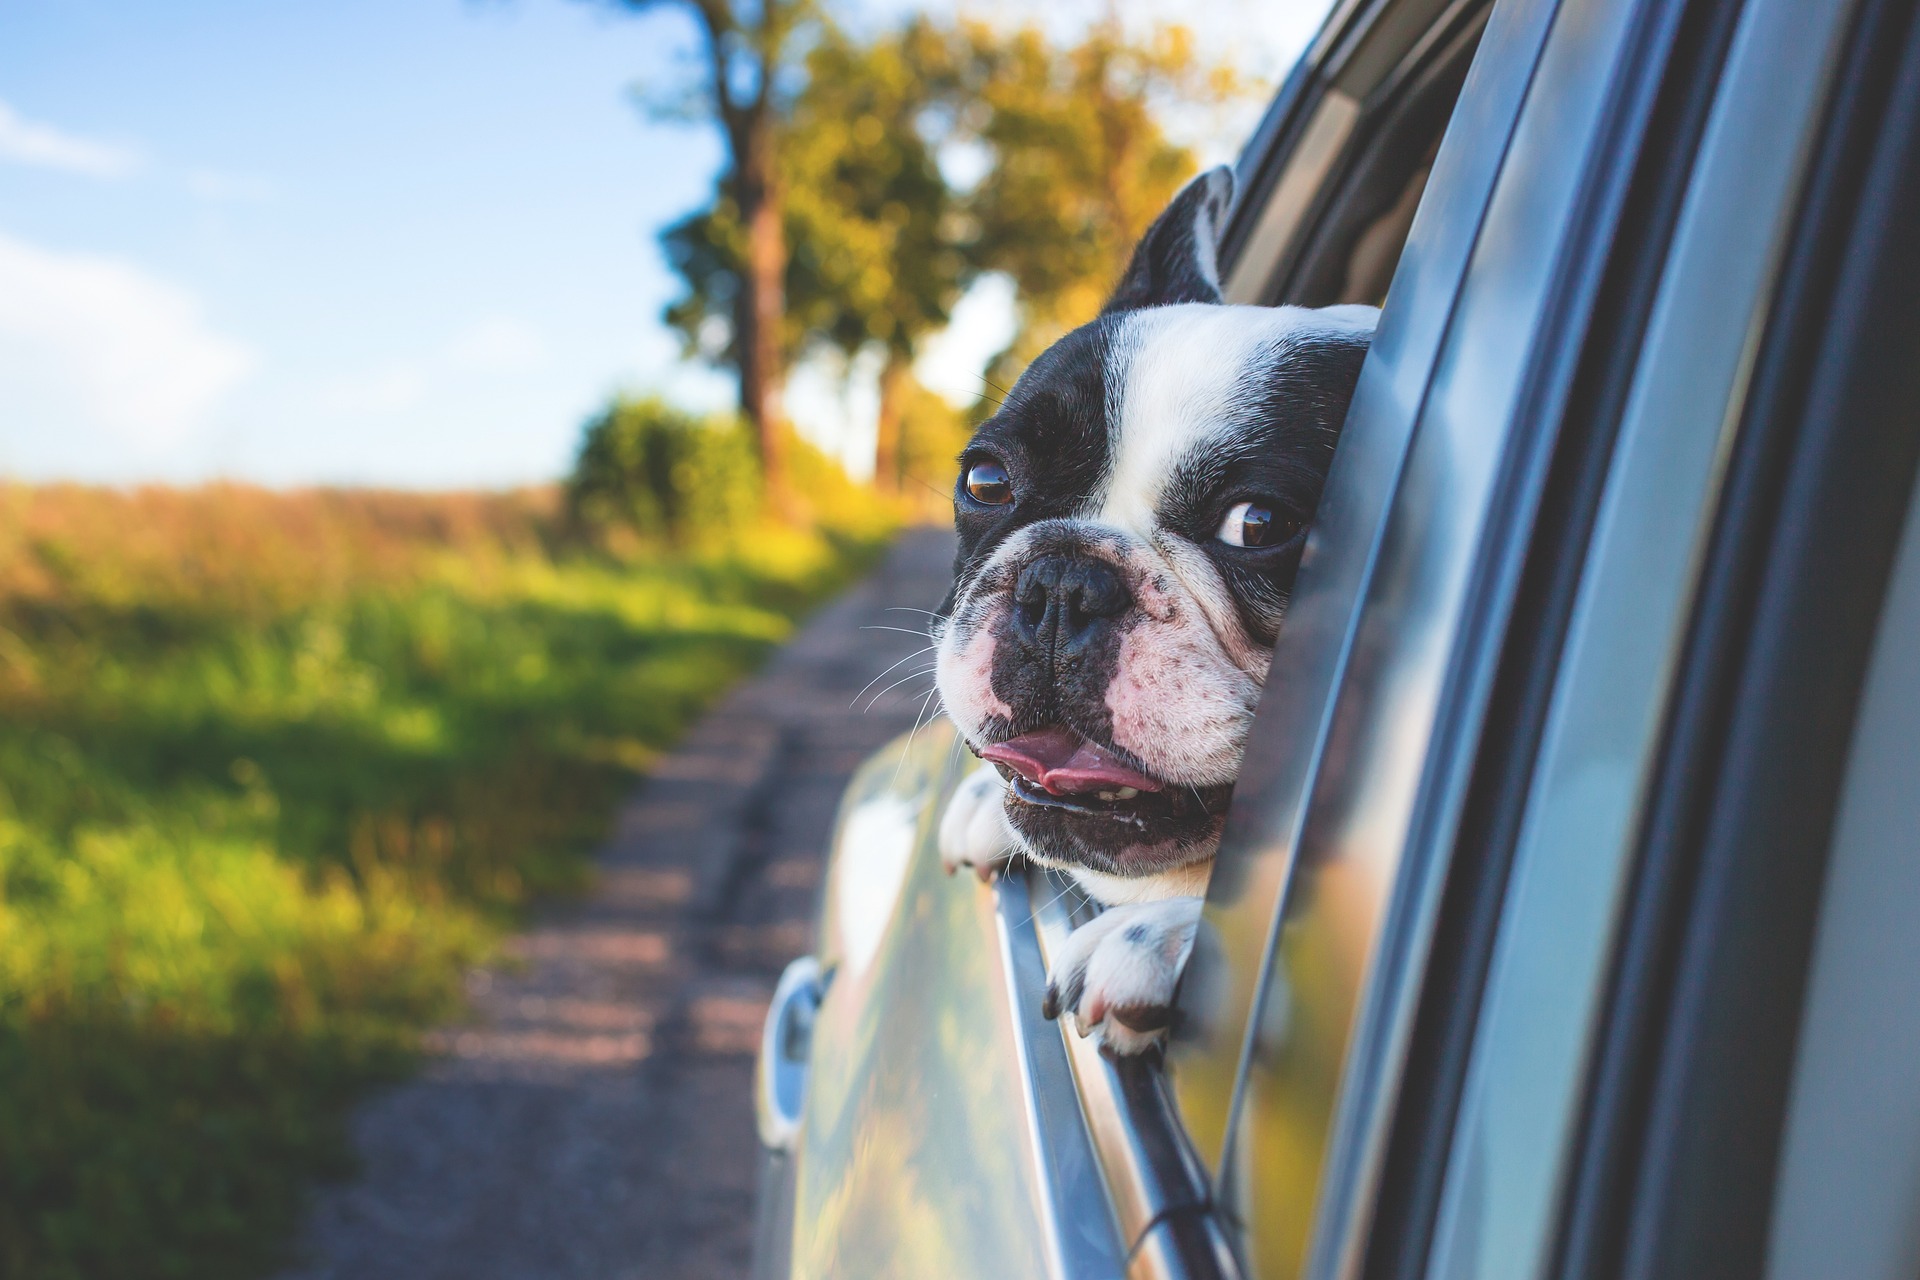 Porady dotyczące podróżowanie z psem – jak się do tego przygotować?